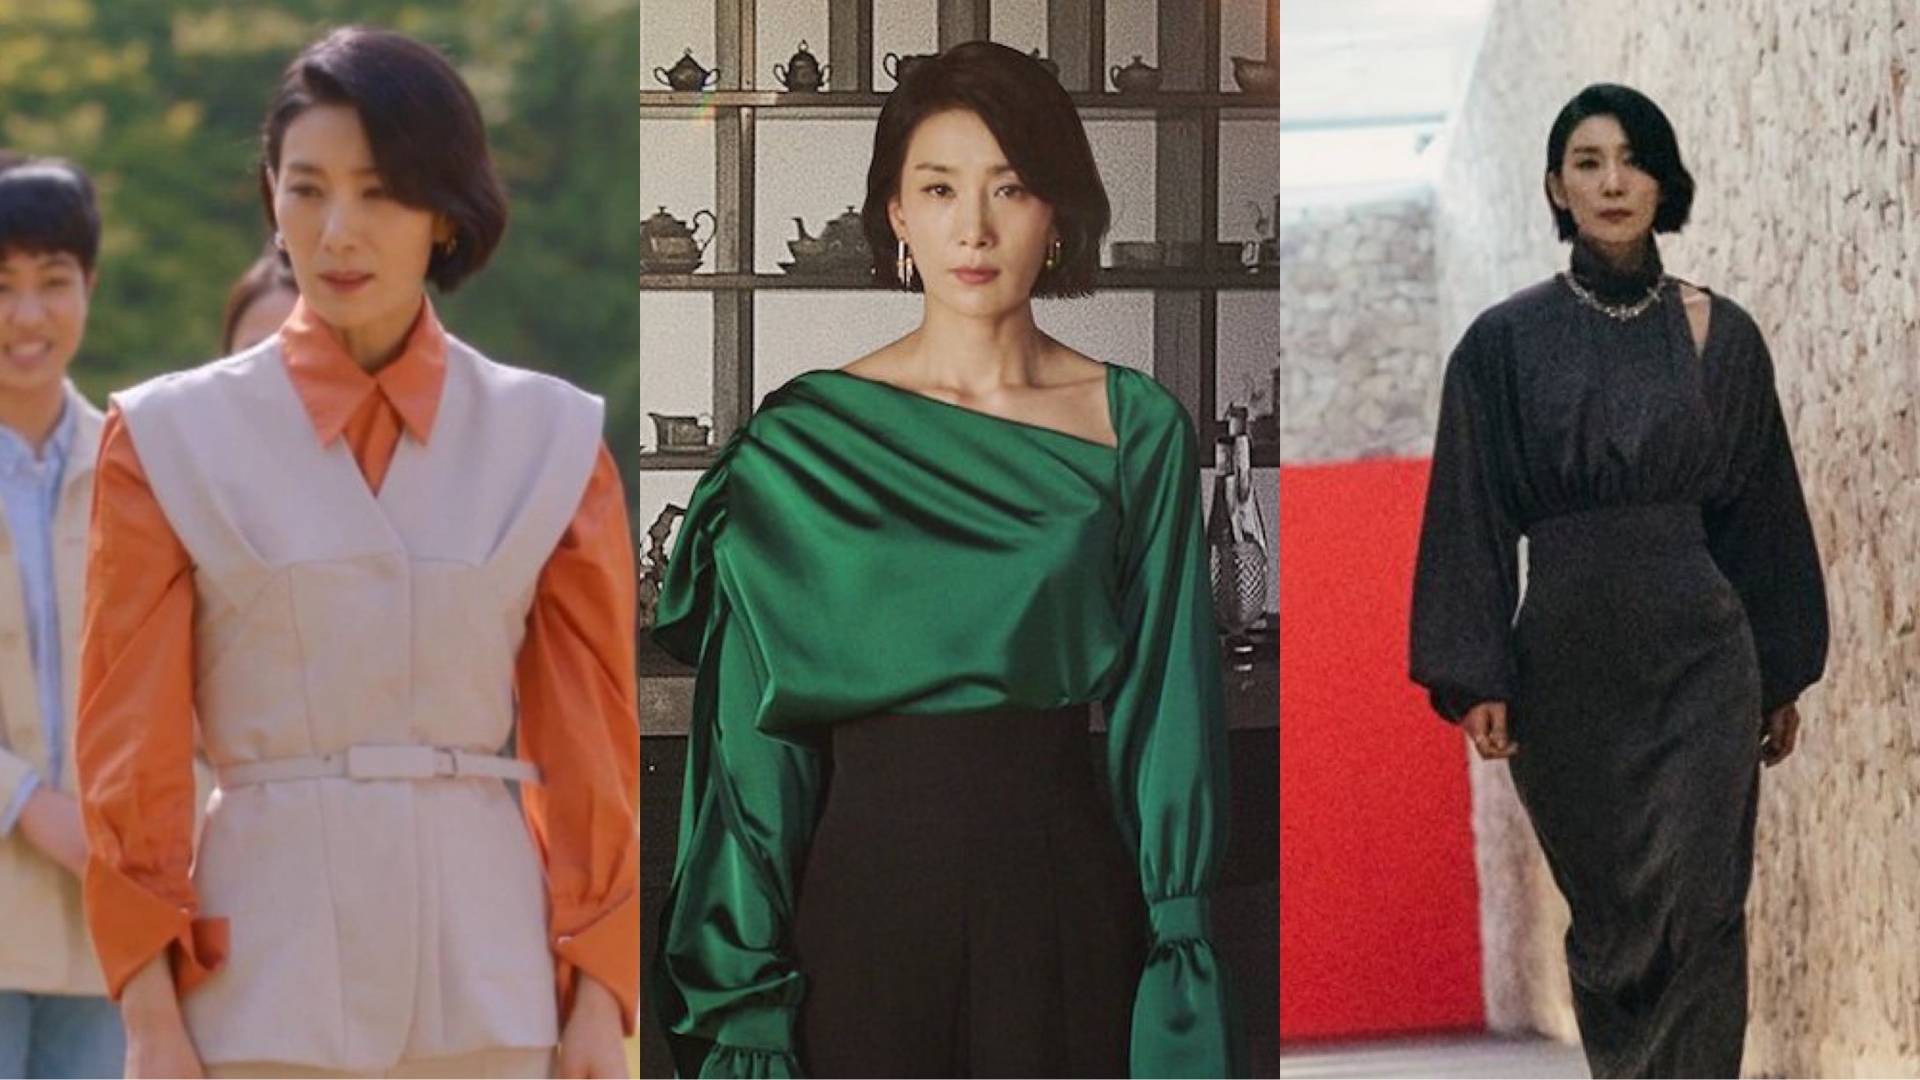 Sở hữu vóc dáng mảnh mai, Kim Seo Hyung cũng không hề ngại diện những item kén dáng. Dù diện bất kì trang phục nào thì các fan cũng phải ngưỡng mộ trước khí chất của người đẹp.